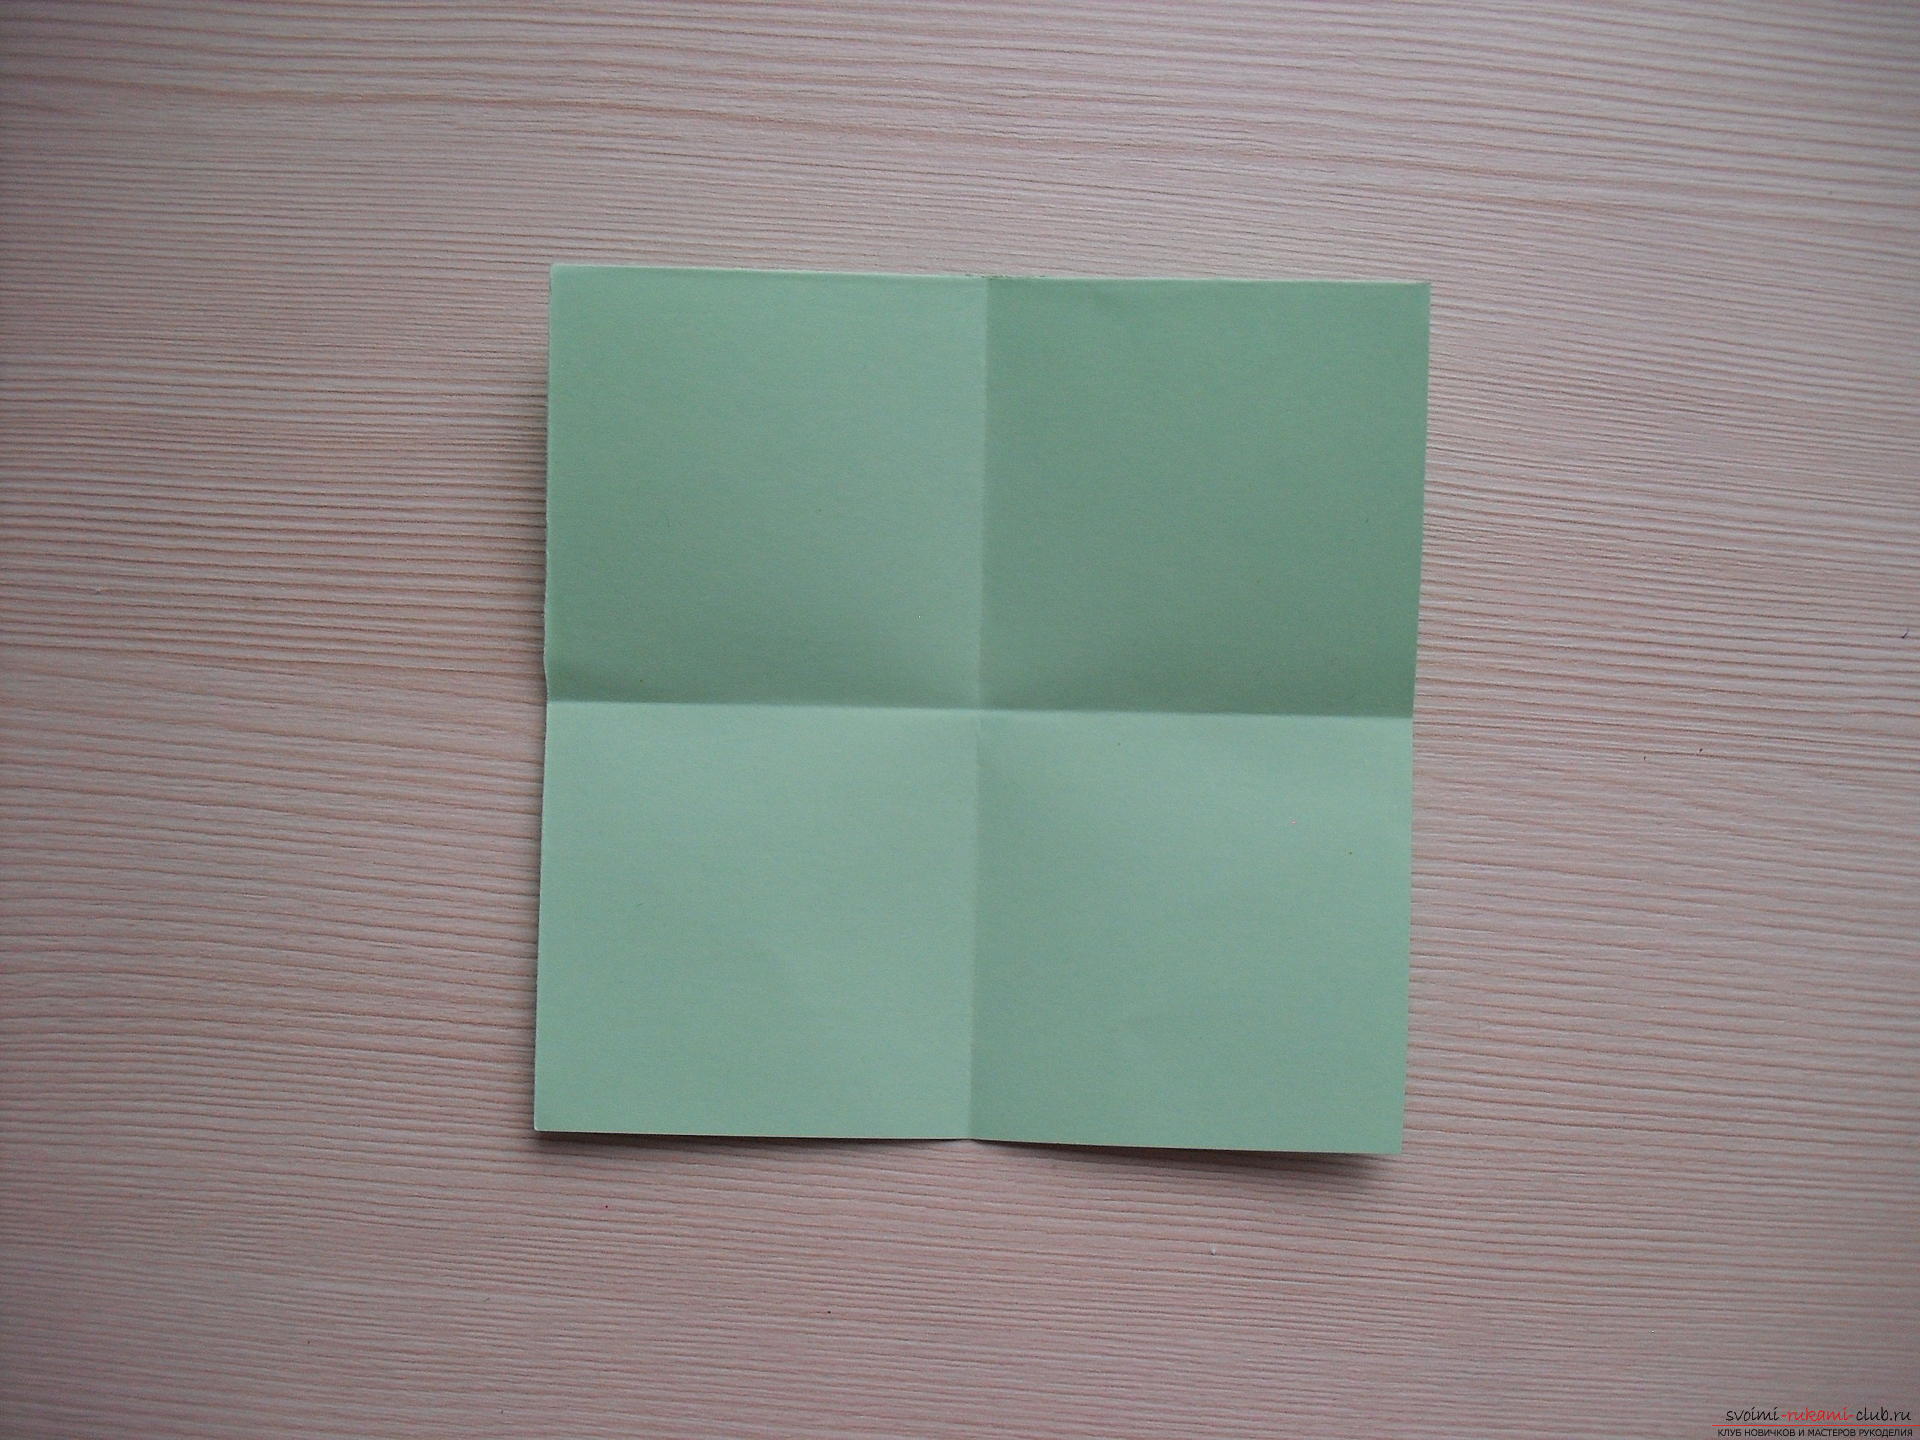 Этот мастер-класс расскажет как сделать своими руками поделку из бумаги - оригами-трансформер.. Фото №4